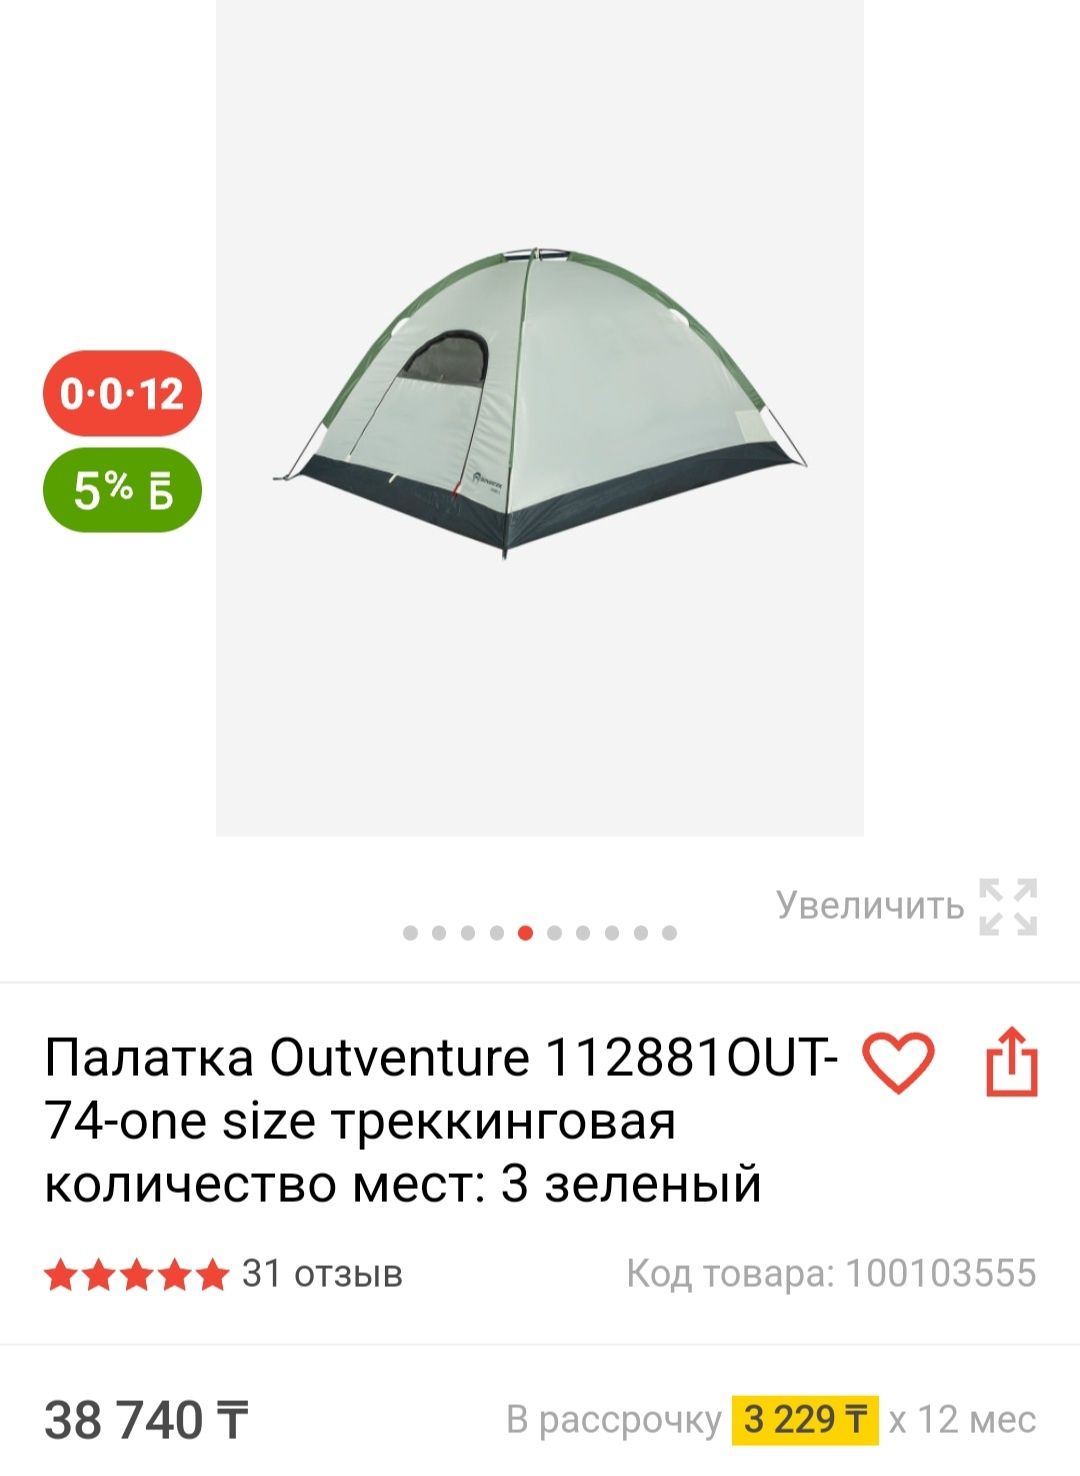 Продам новую палатку